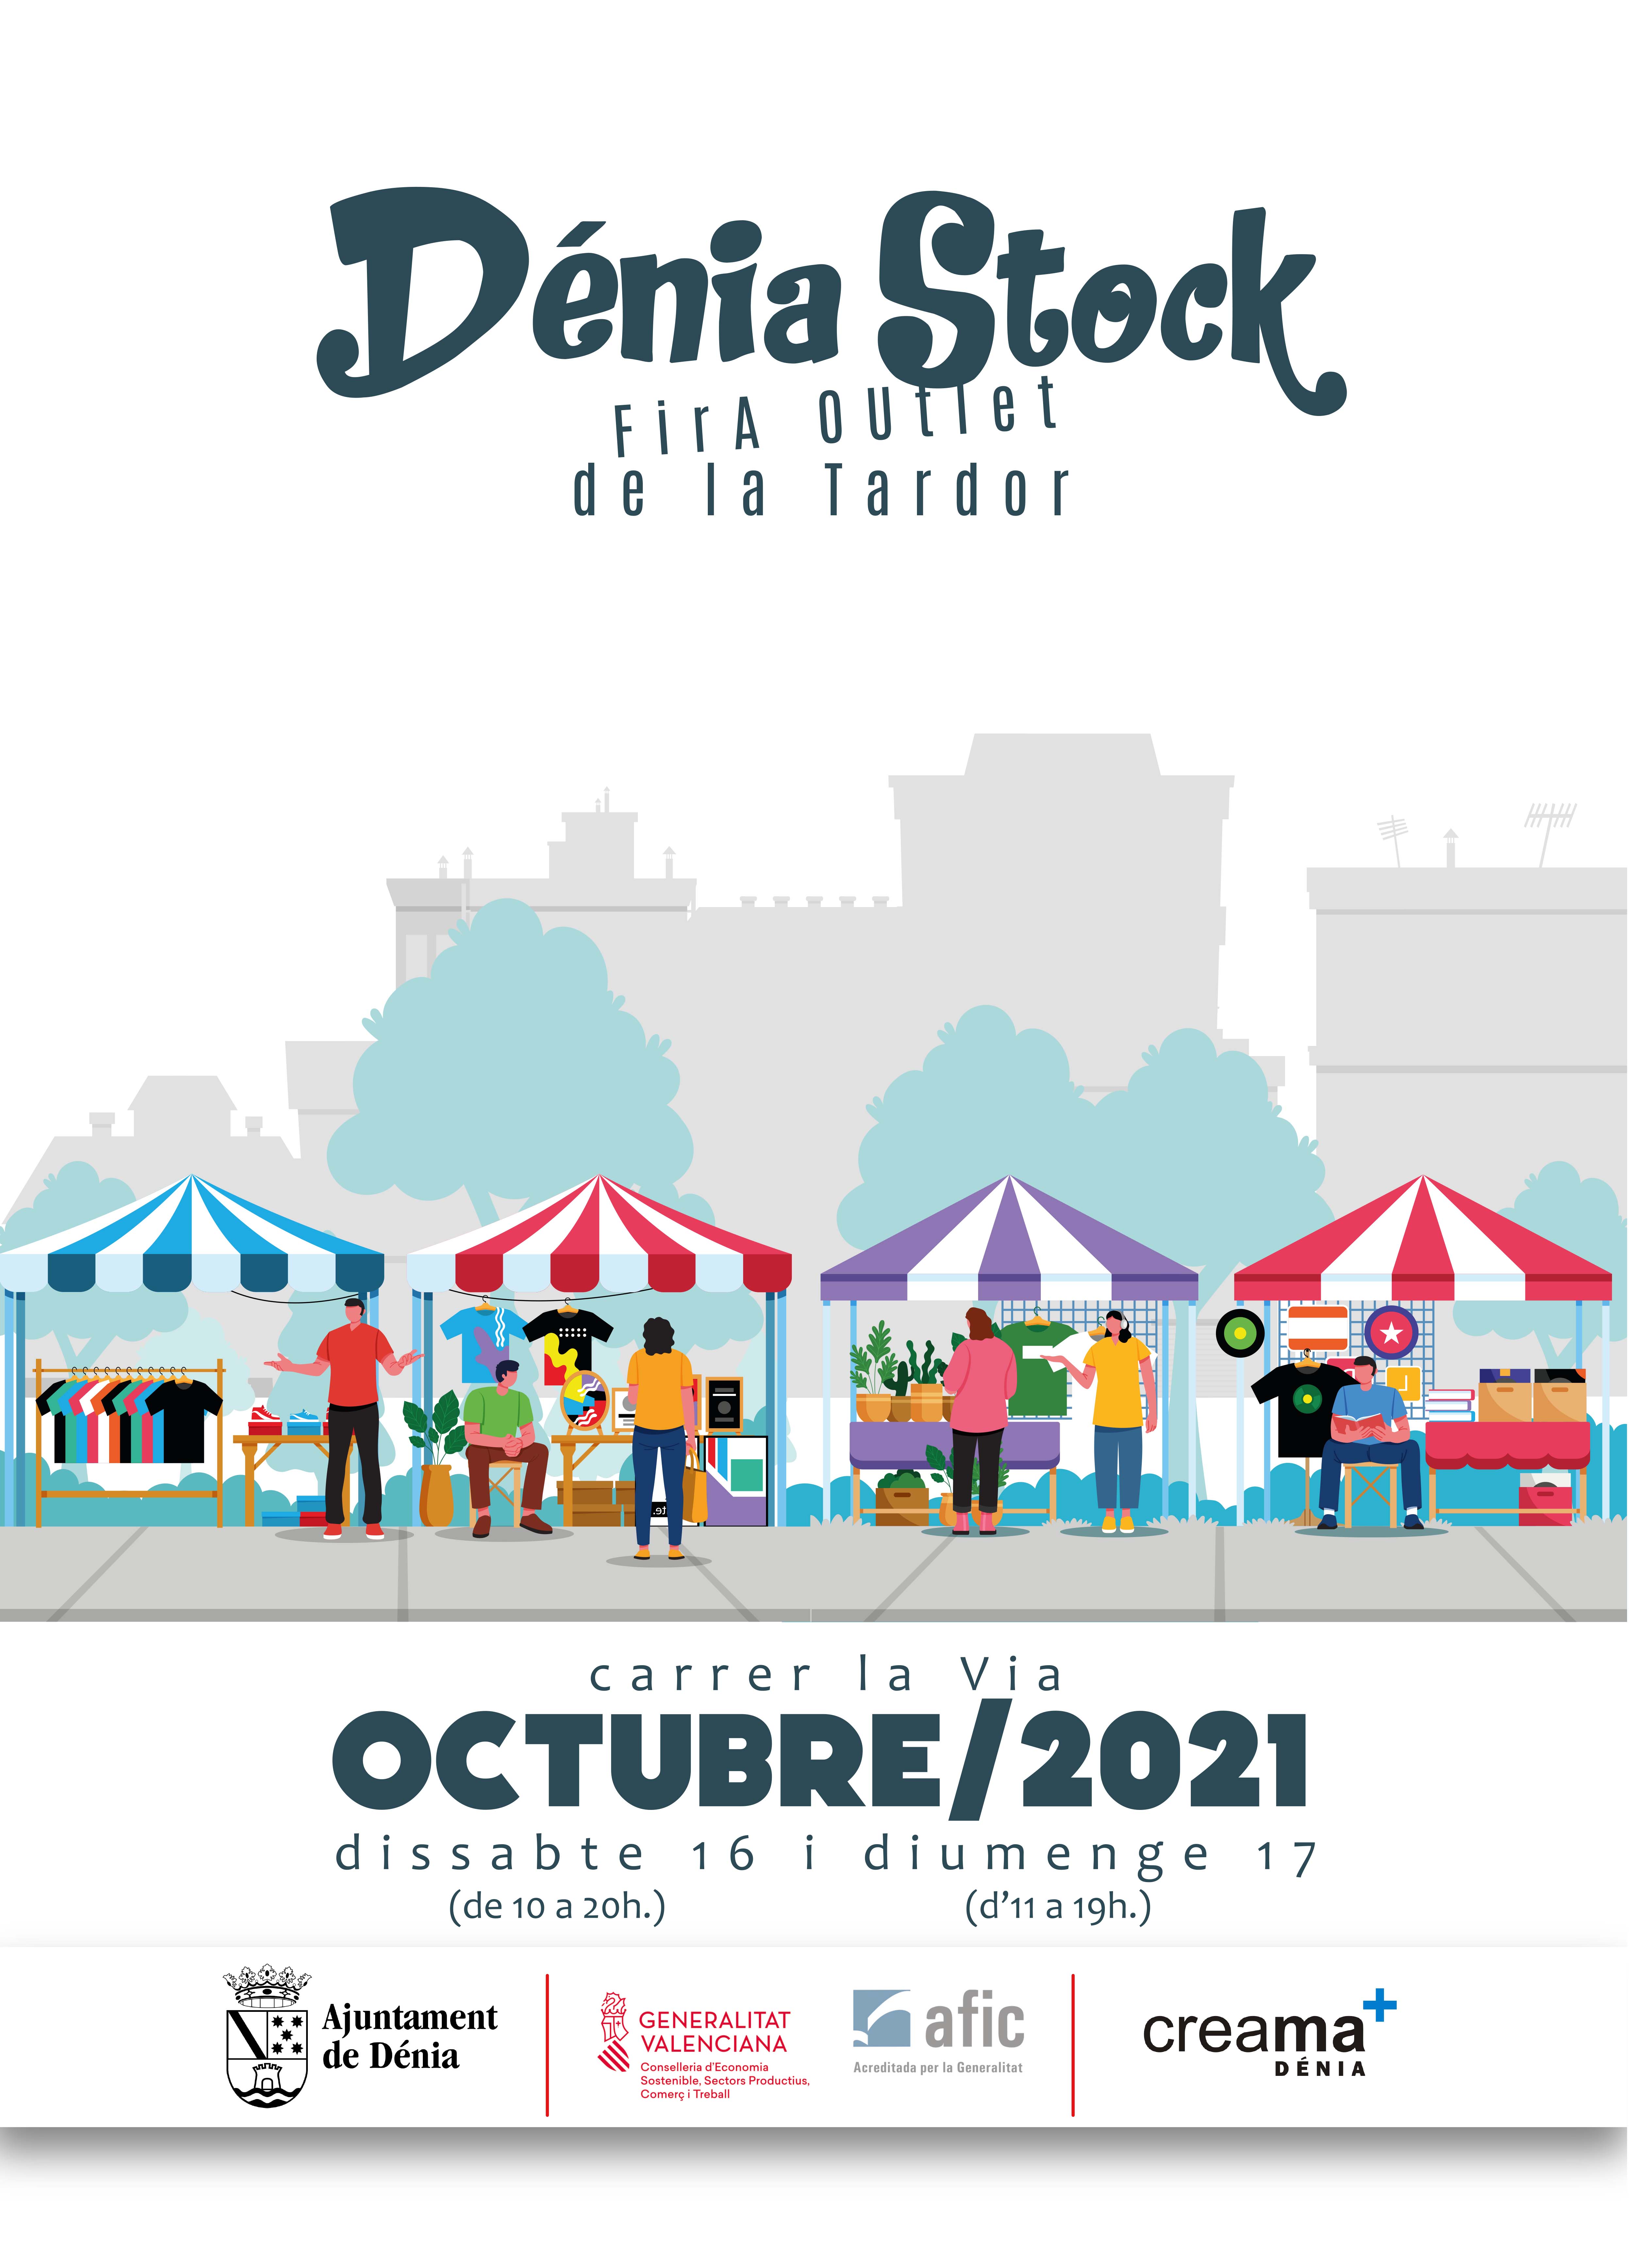 Nueva edición de la feria del stock en la calle La Via los días 16 y 17 de octubre